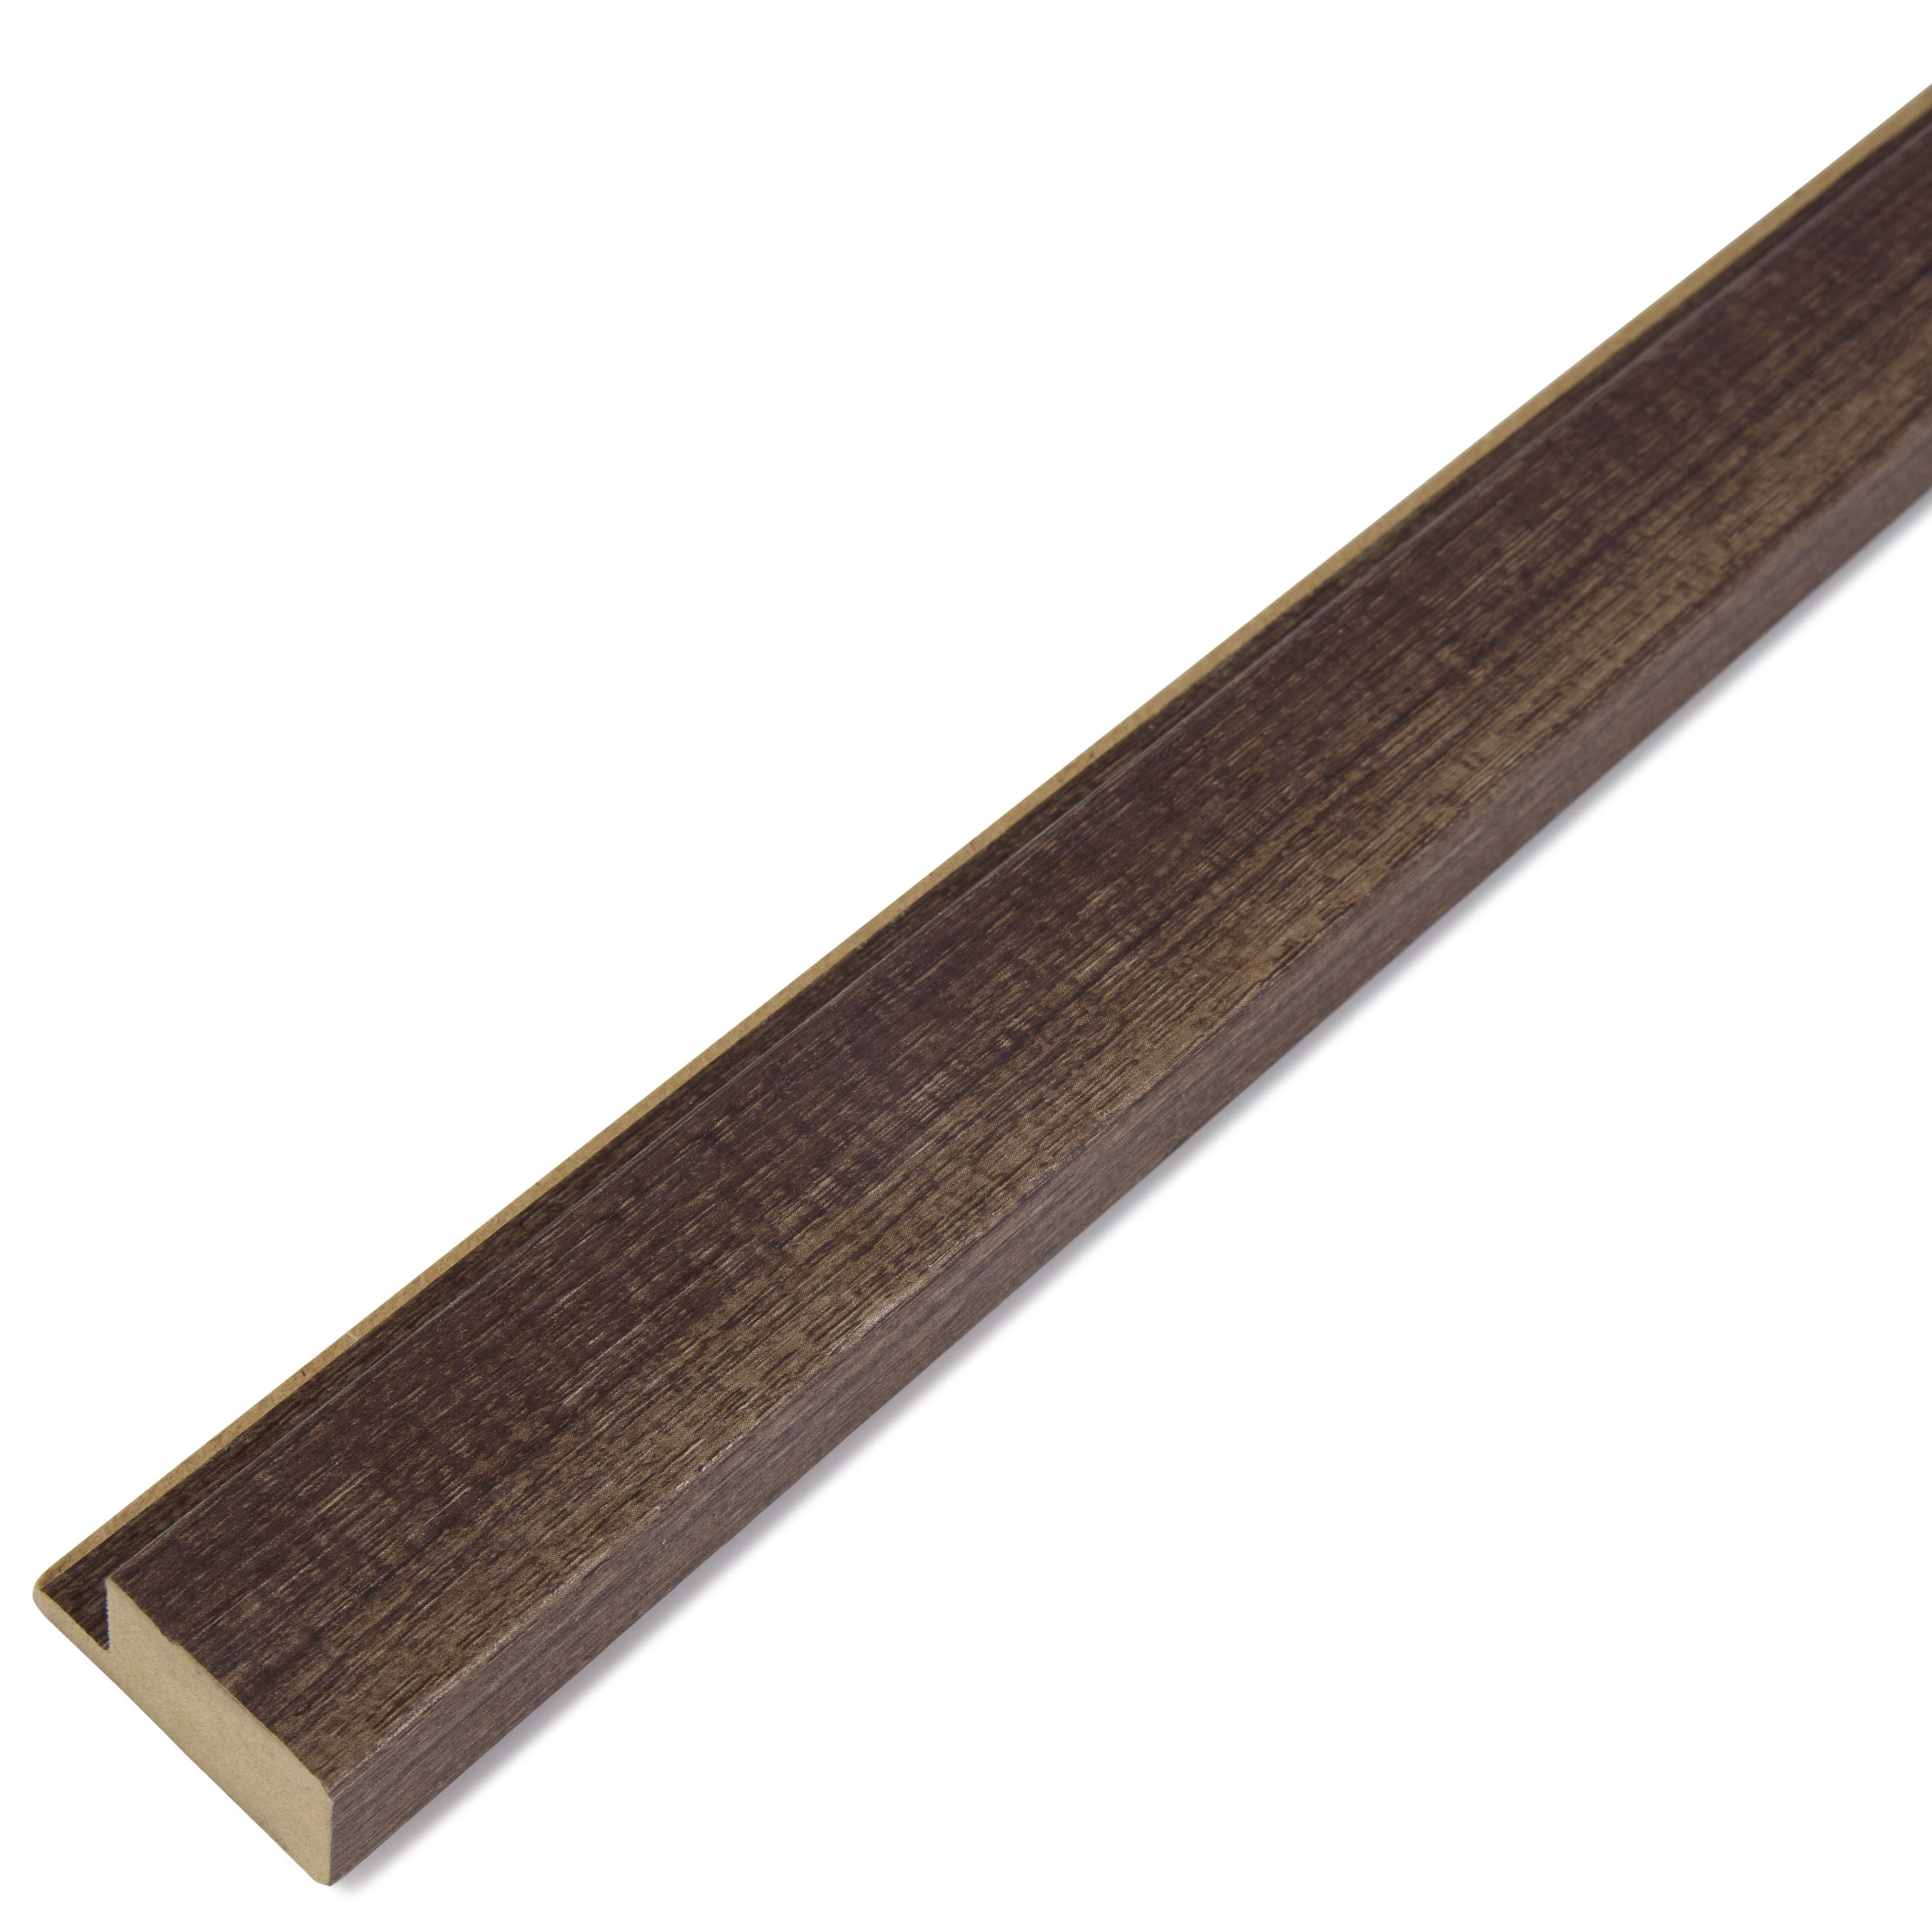 Luxe Acoustic Texas Oak 3D Slat Panel Wall Profile - MDF - Industry Tile